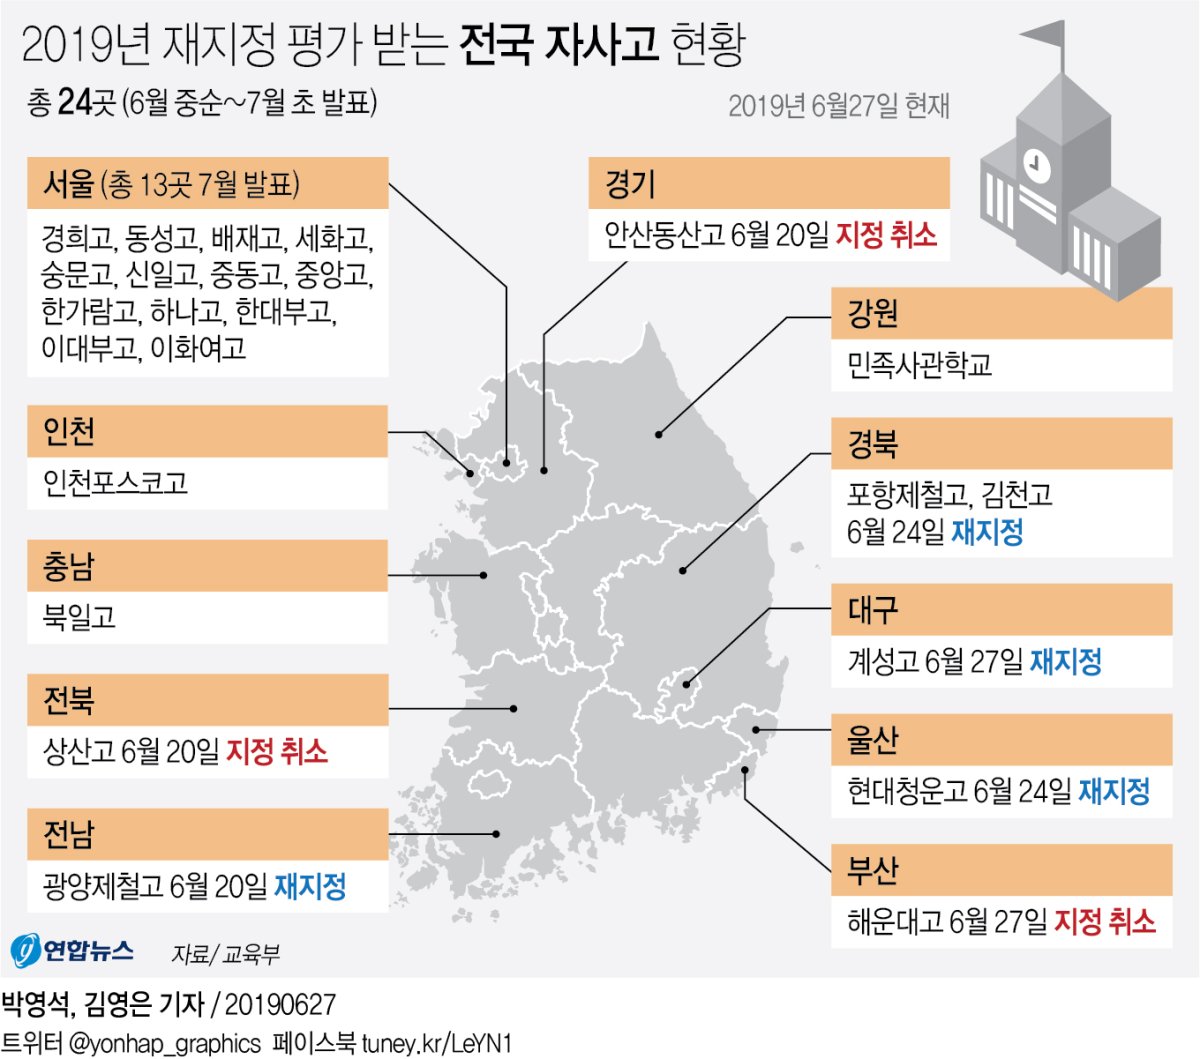 [그래픽] 2019년 재지정 평가 받는 전국 자사고 현황